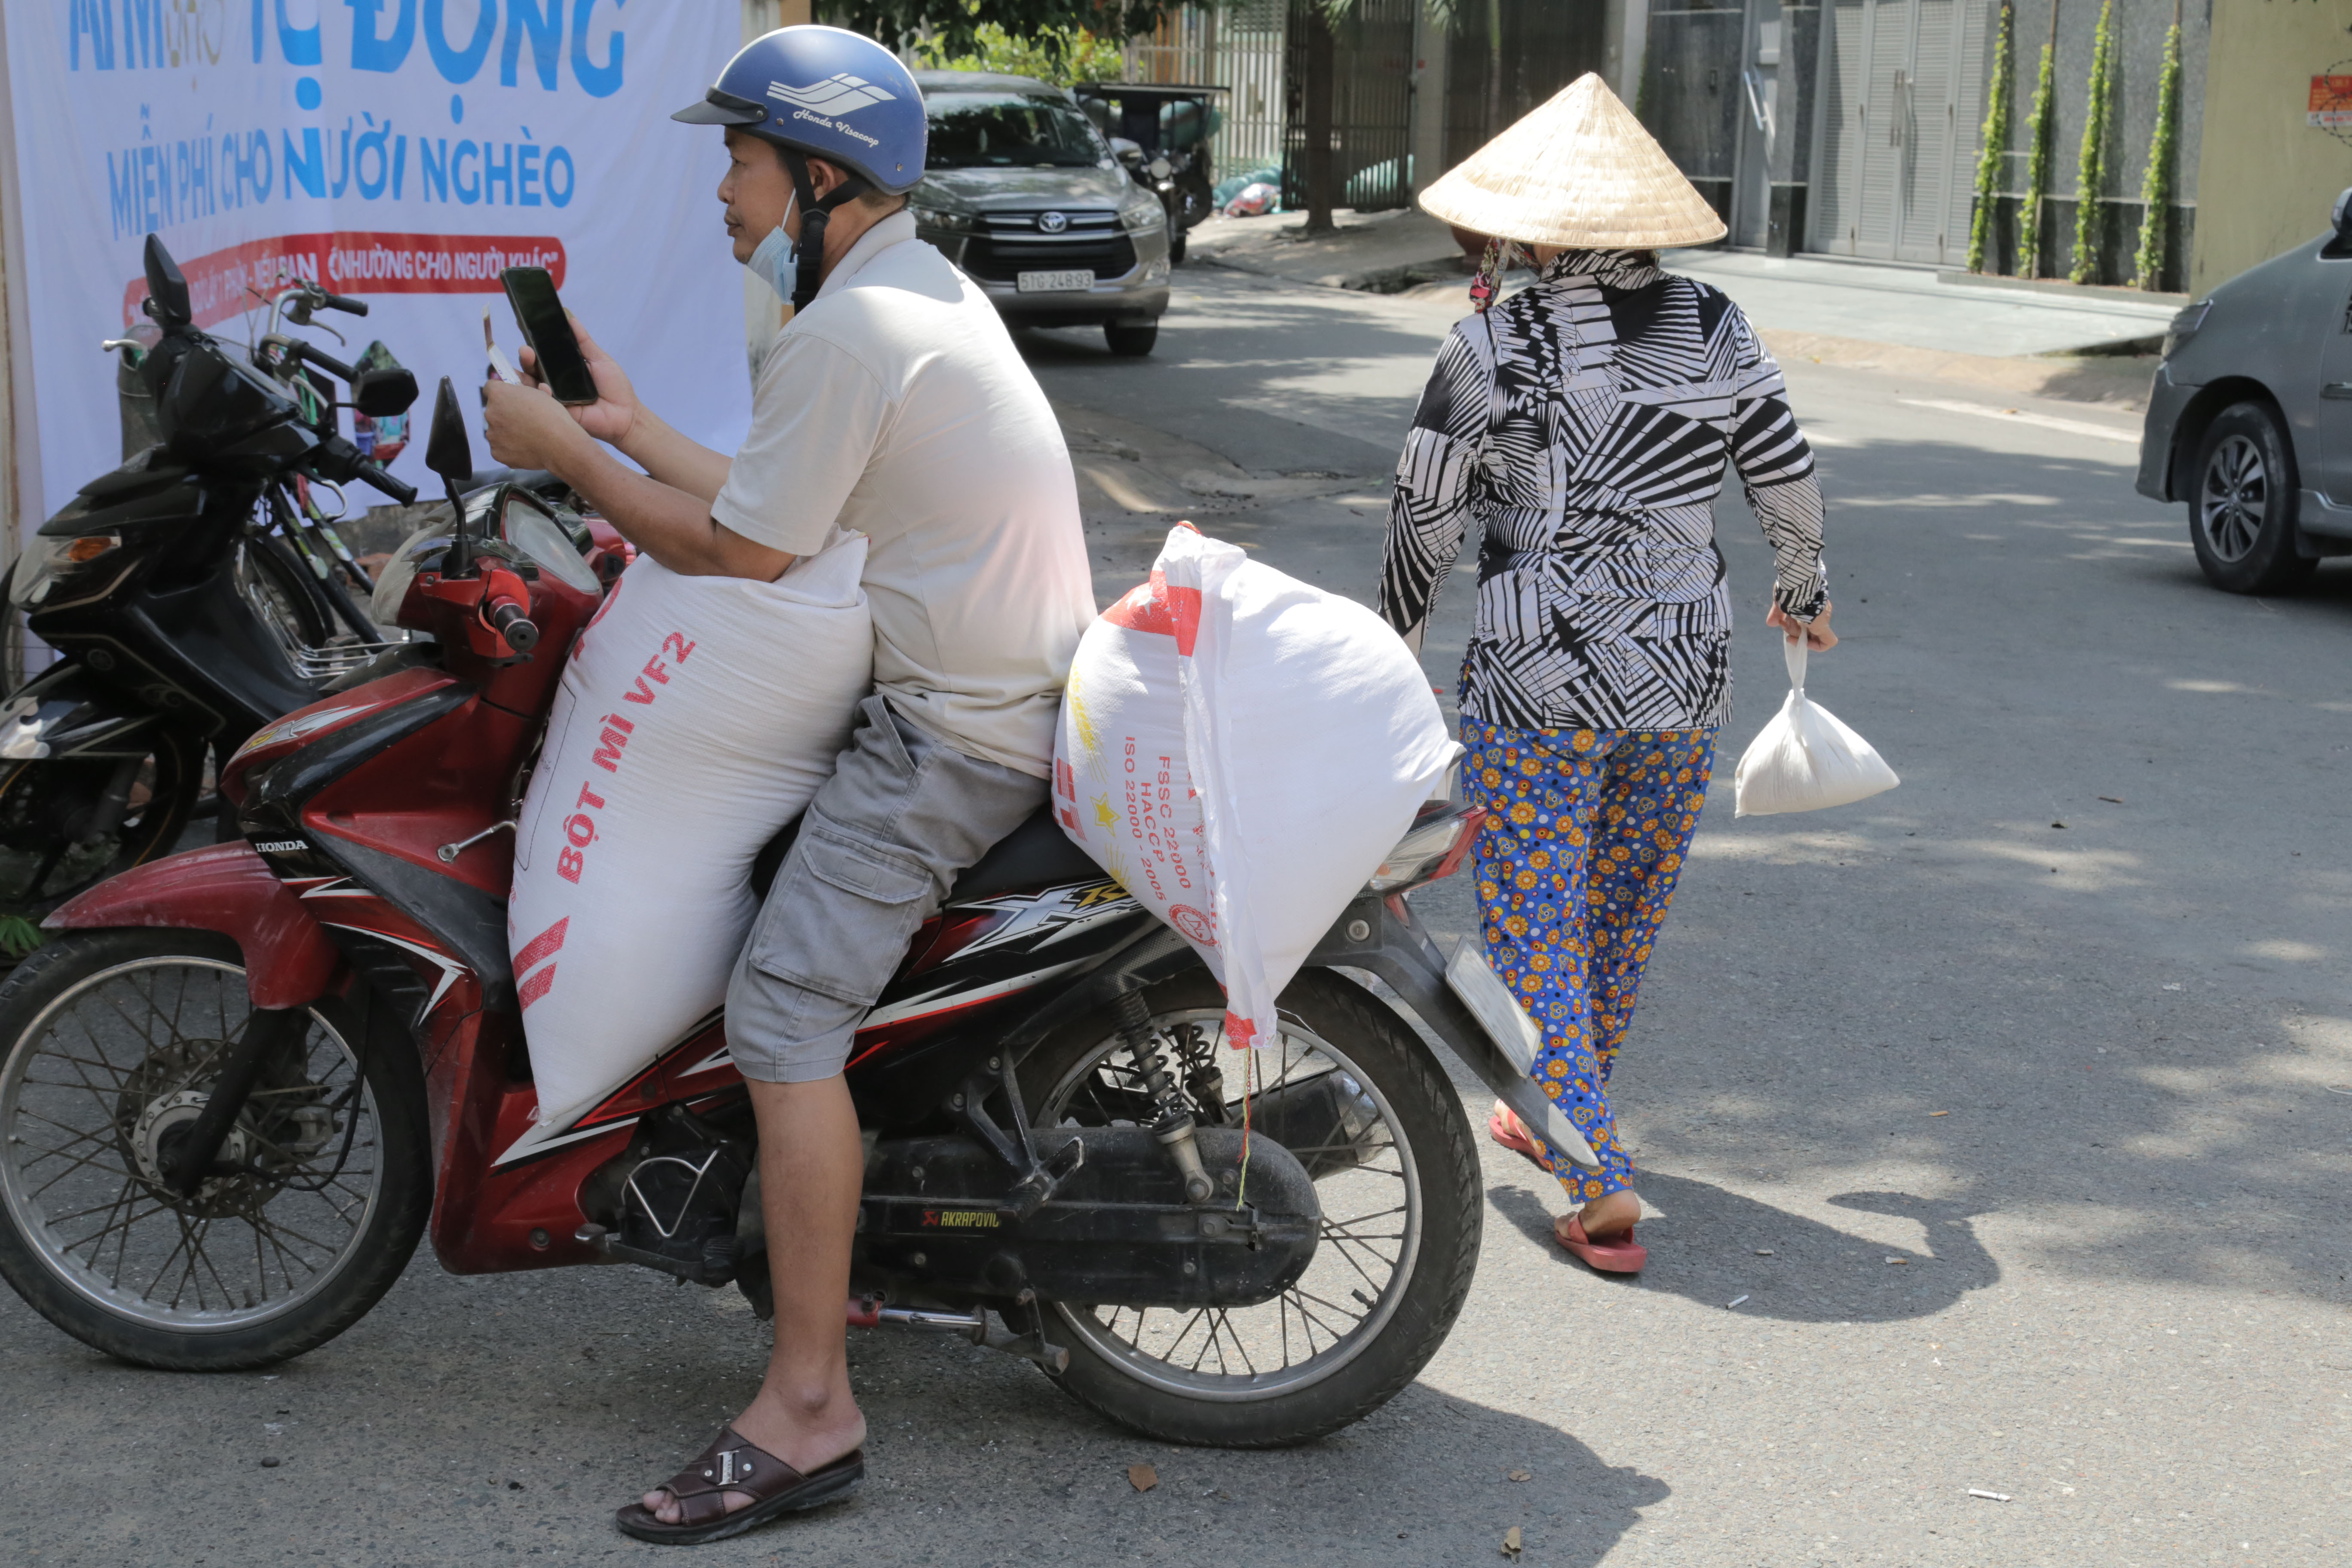 "ATM gạo” thứ 2 ở Sài Gòn hoạt động trong mùa dịch, bà con